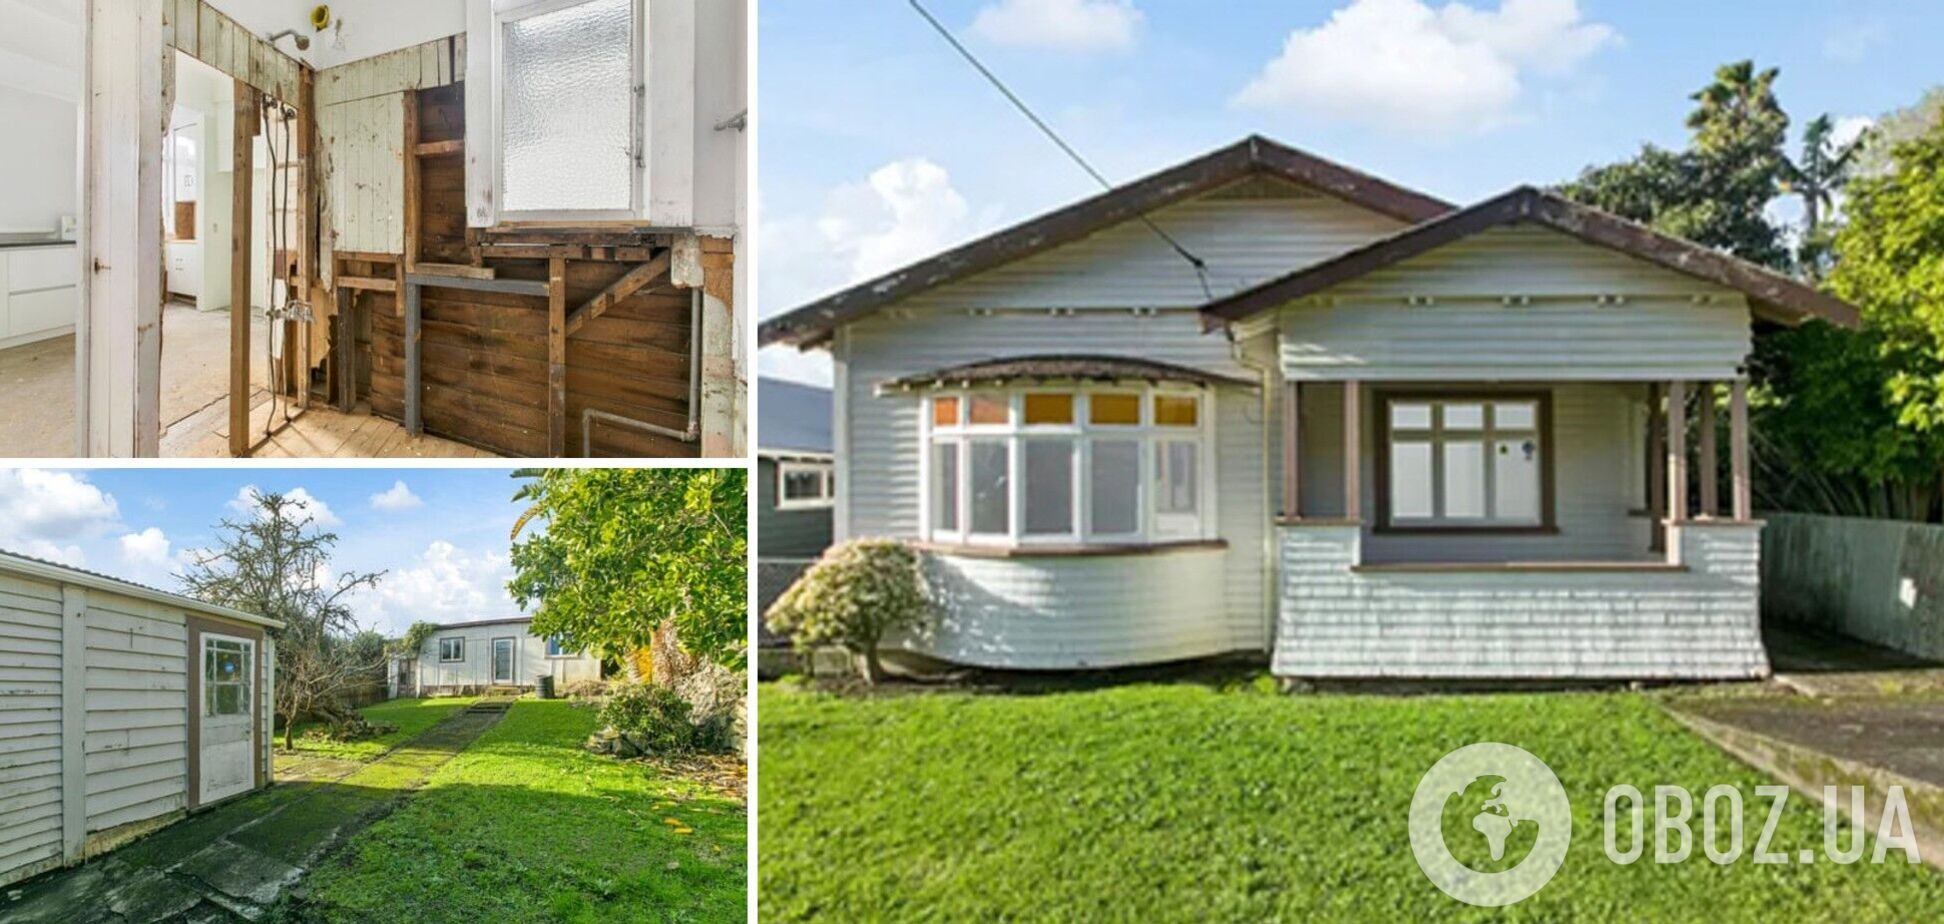 Ветхий дом в пригороде Окленда продали за 2 млн новозеландских долларов